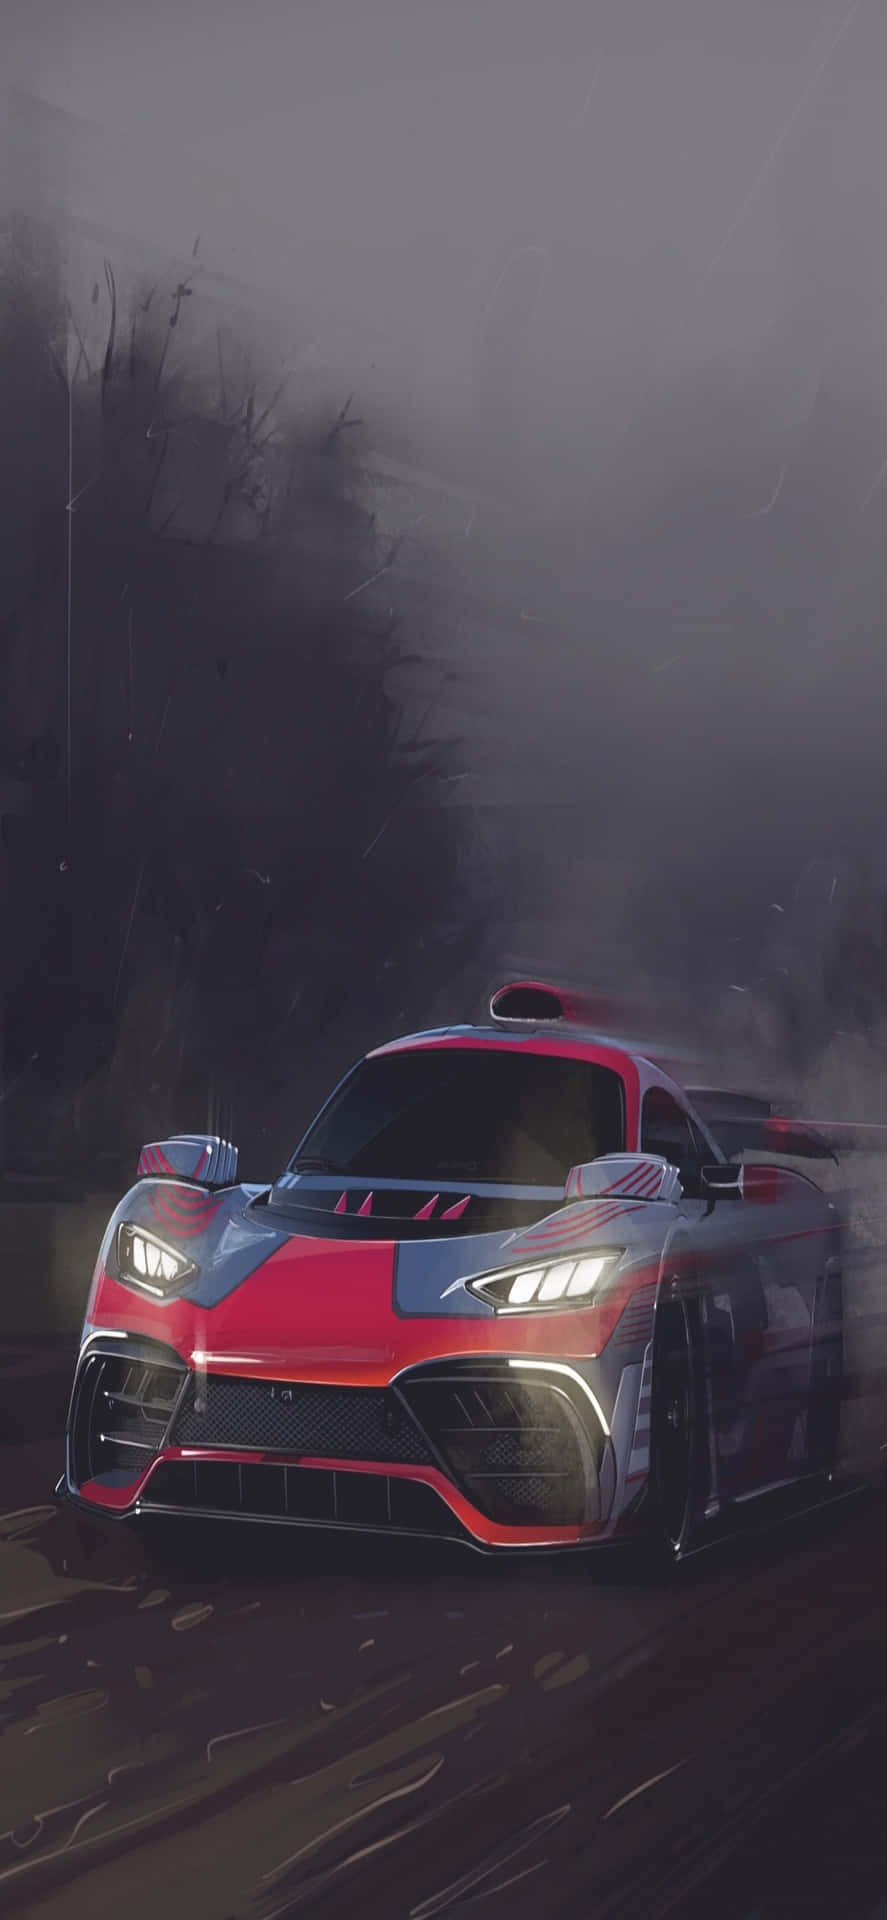 a racing car driving through a fog